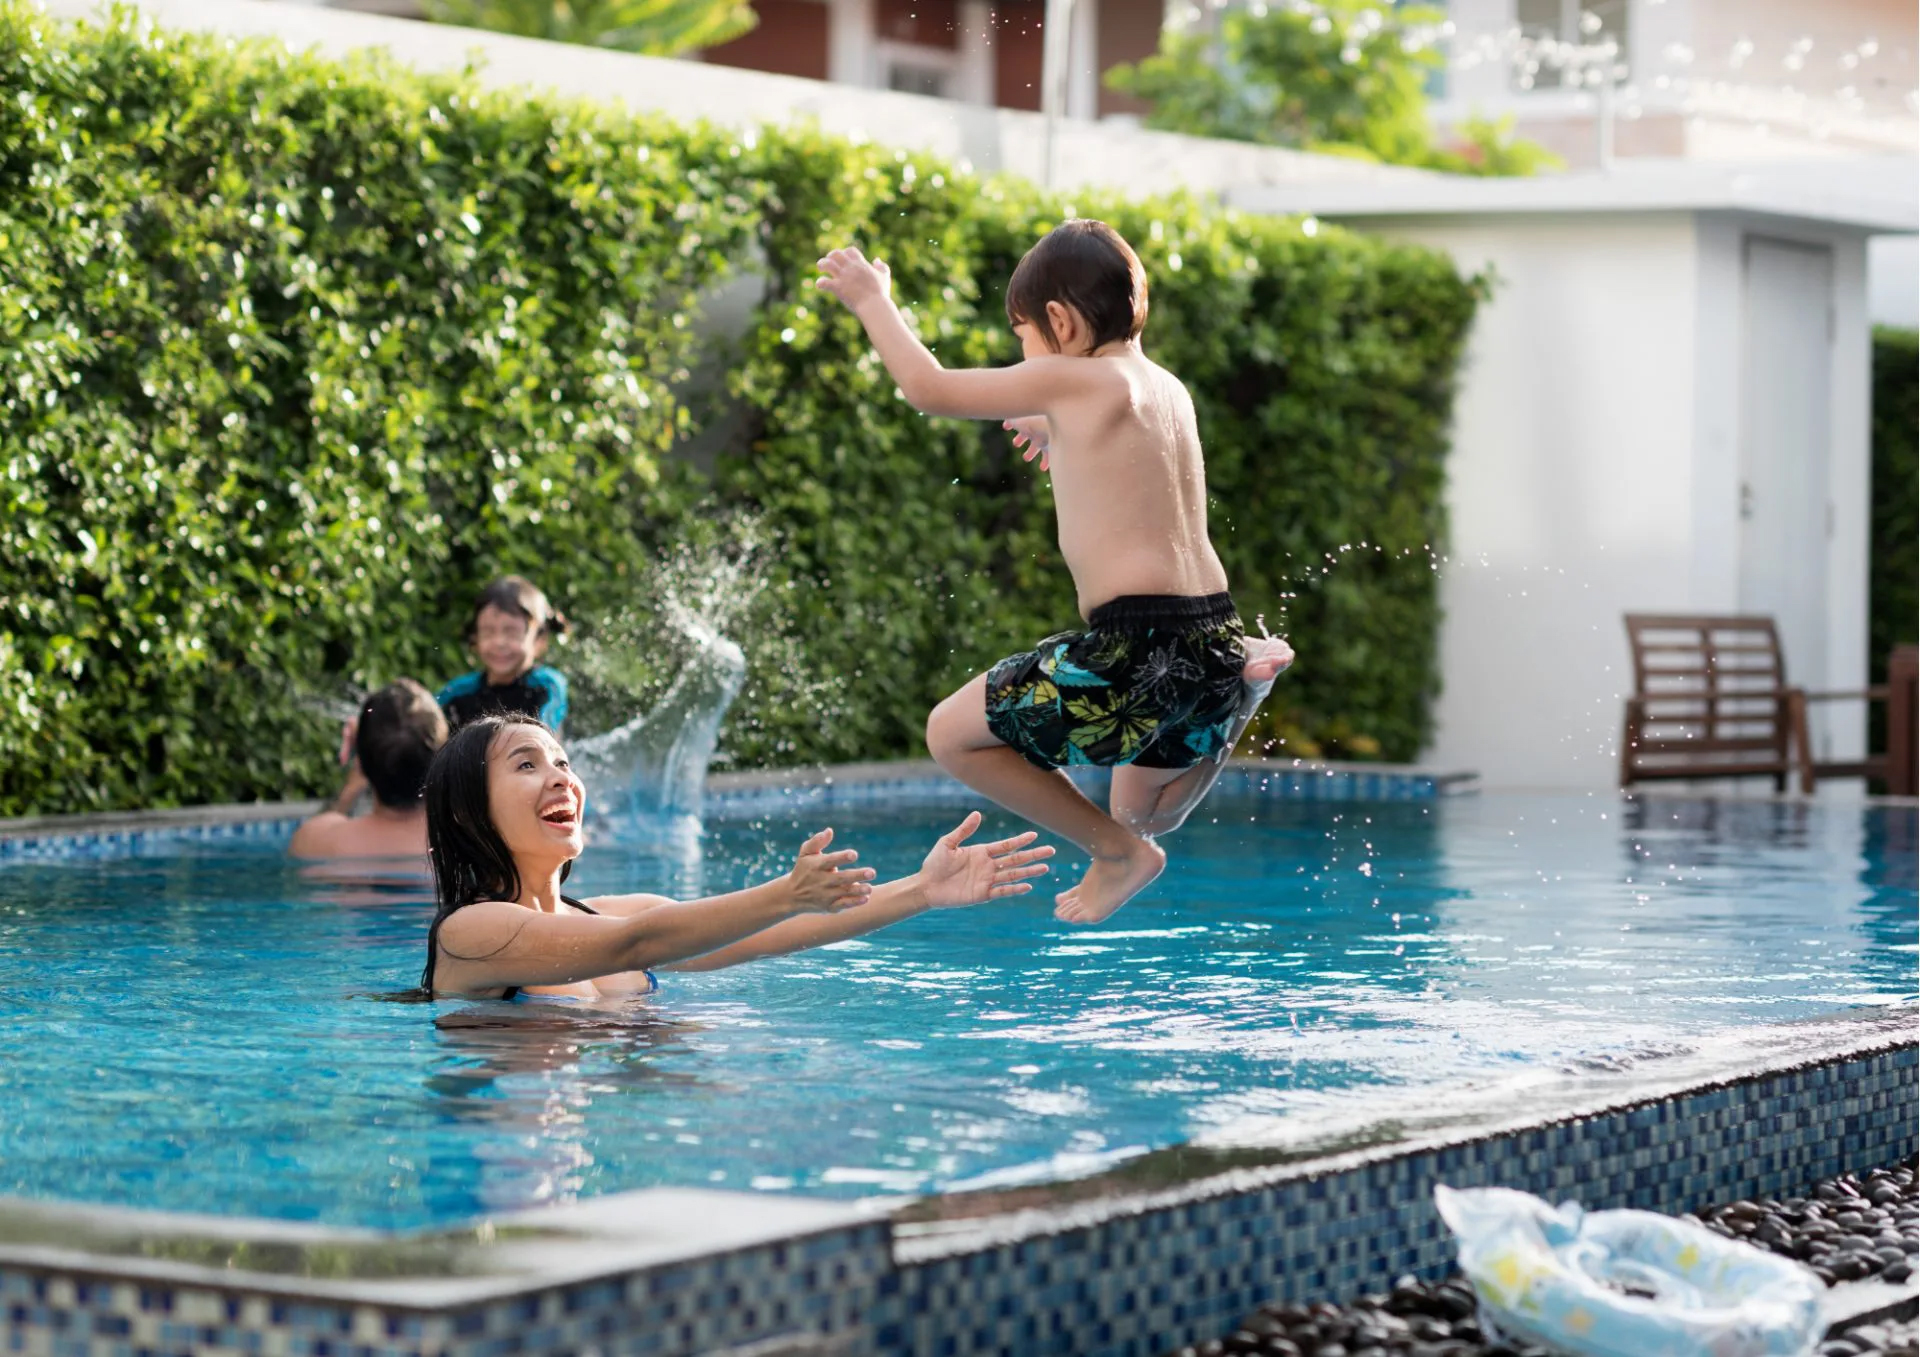 Đi bơi mùa hè: Chọn bể bơi an toàn cần đảm bảo 5 thứ - Ảnh 4.